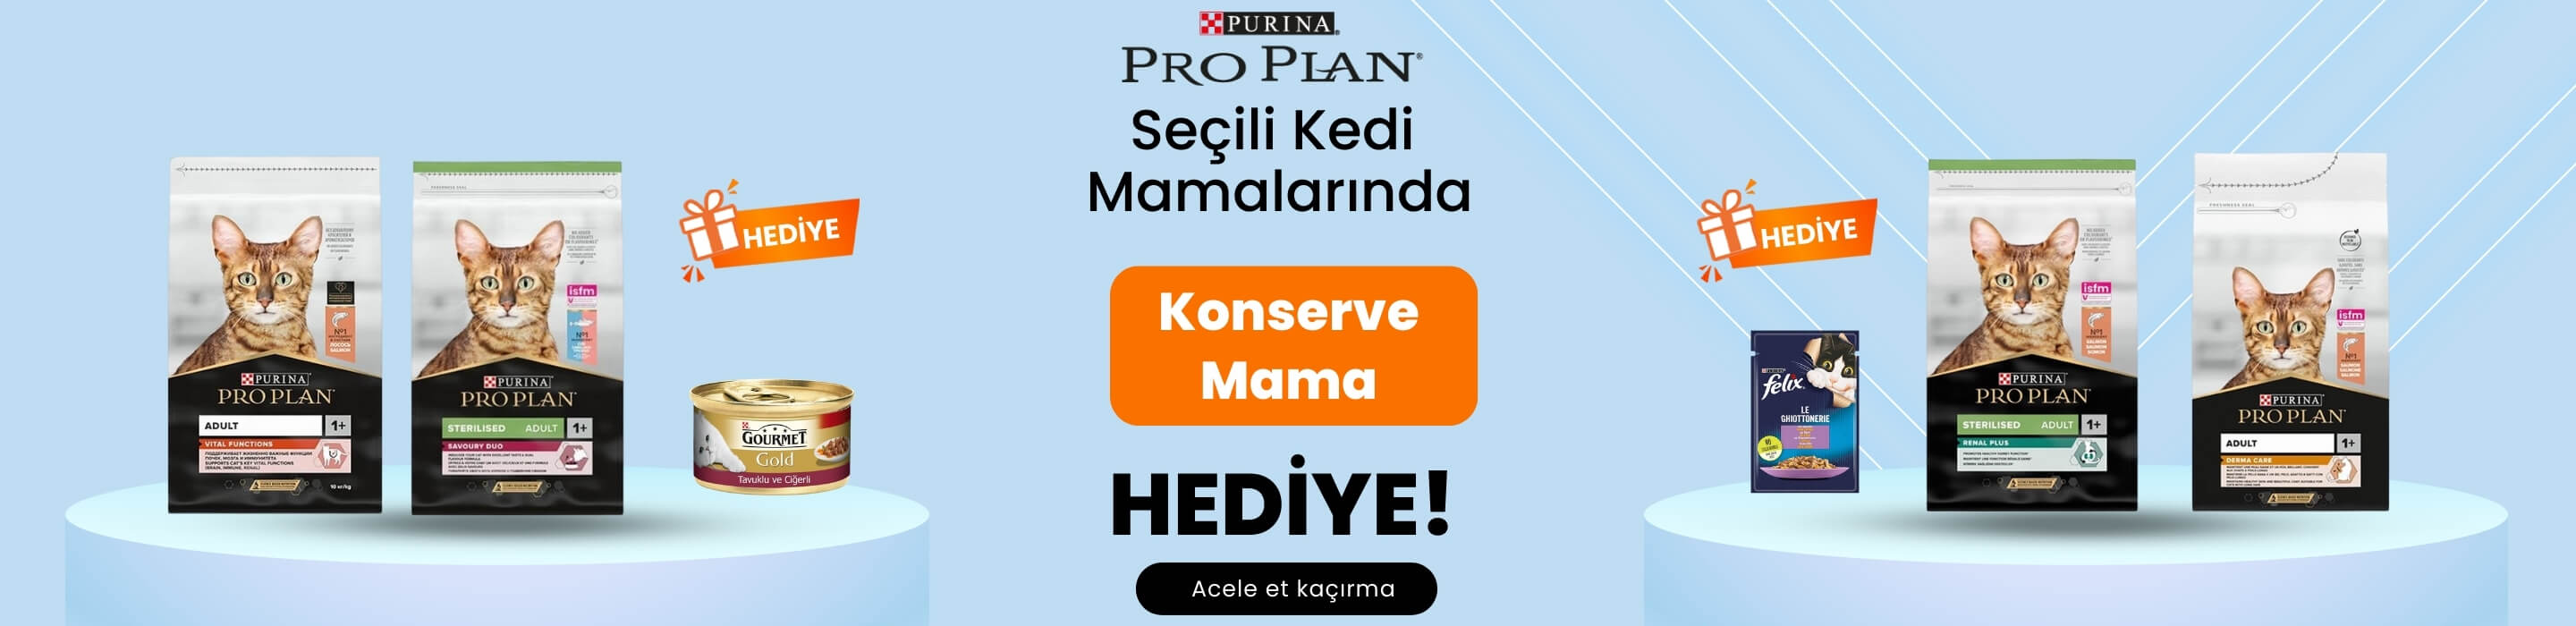 Pro Plan Kedi Mamalarında Konserve Hediye!